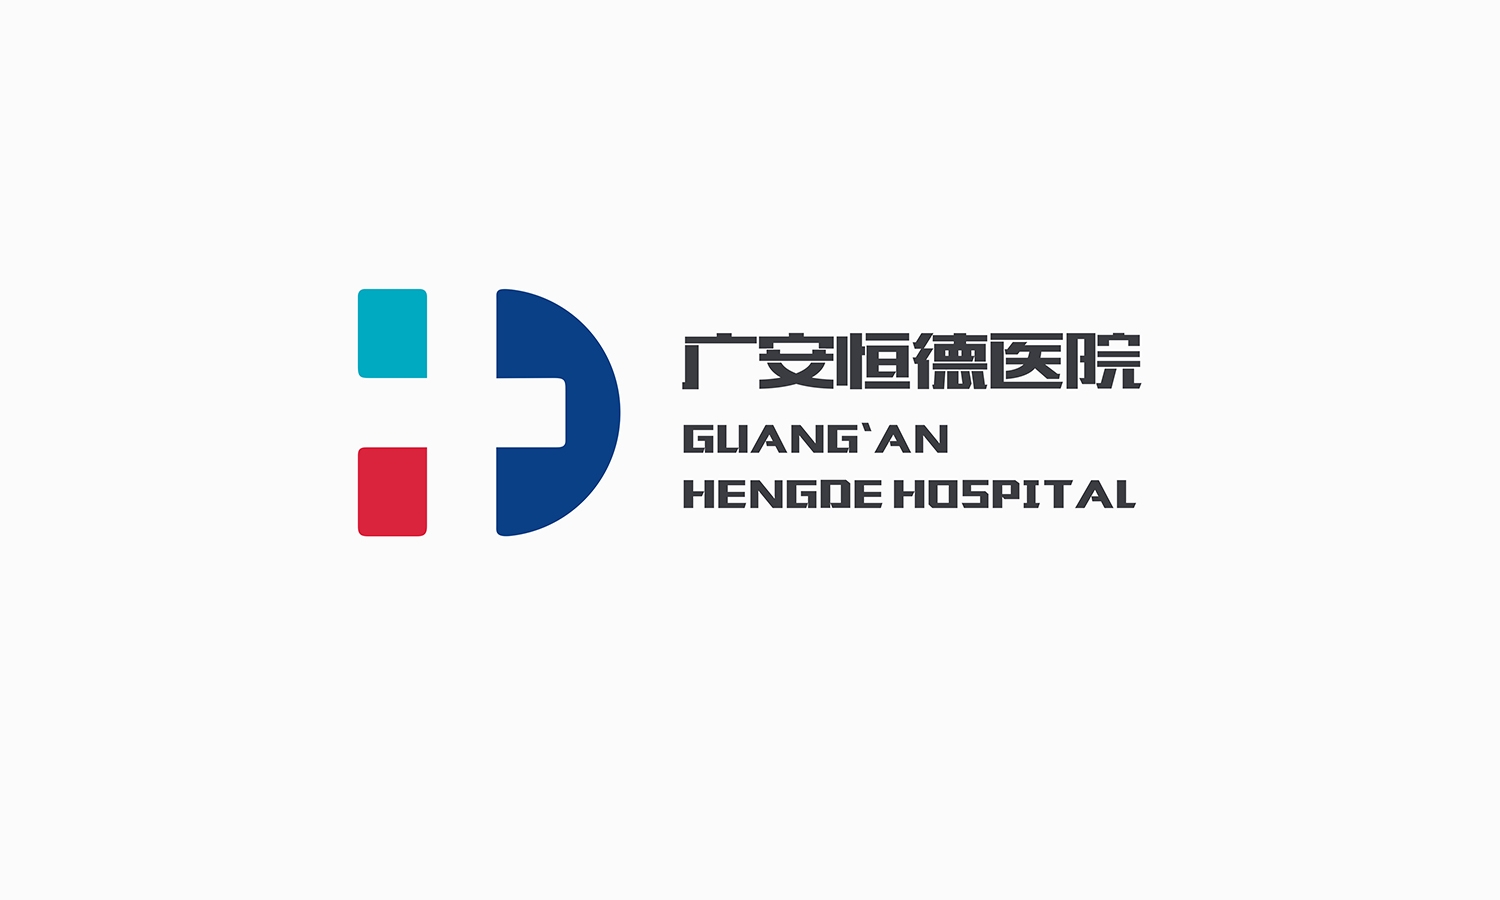 广安恒德医院-标志正稿-厚启包装设计